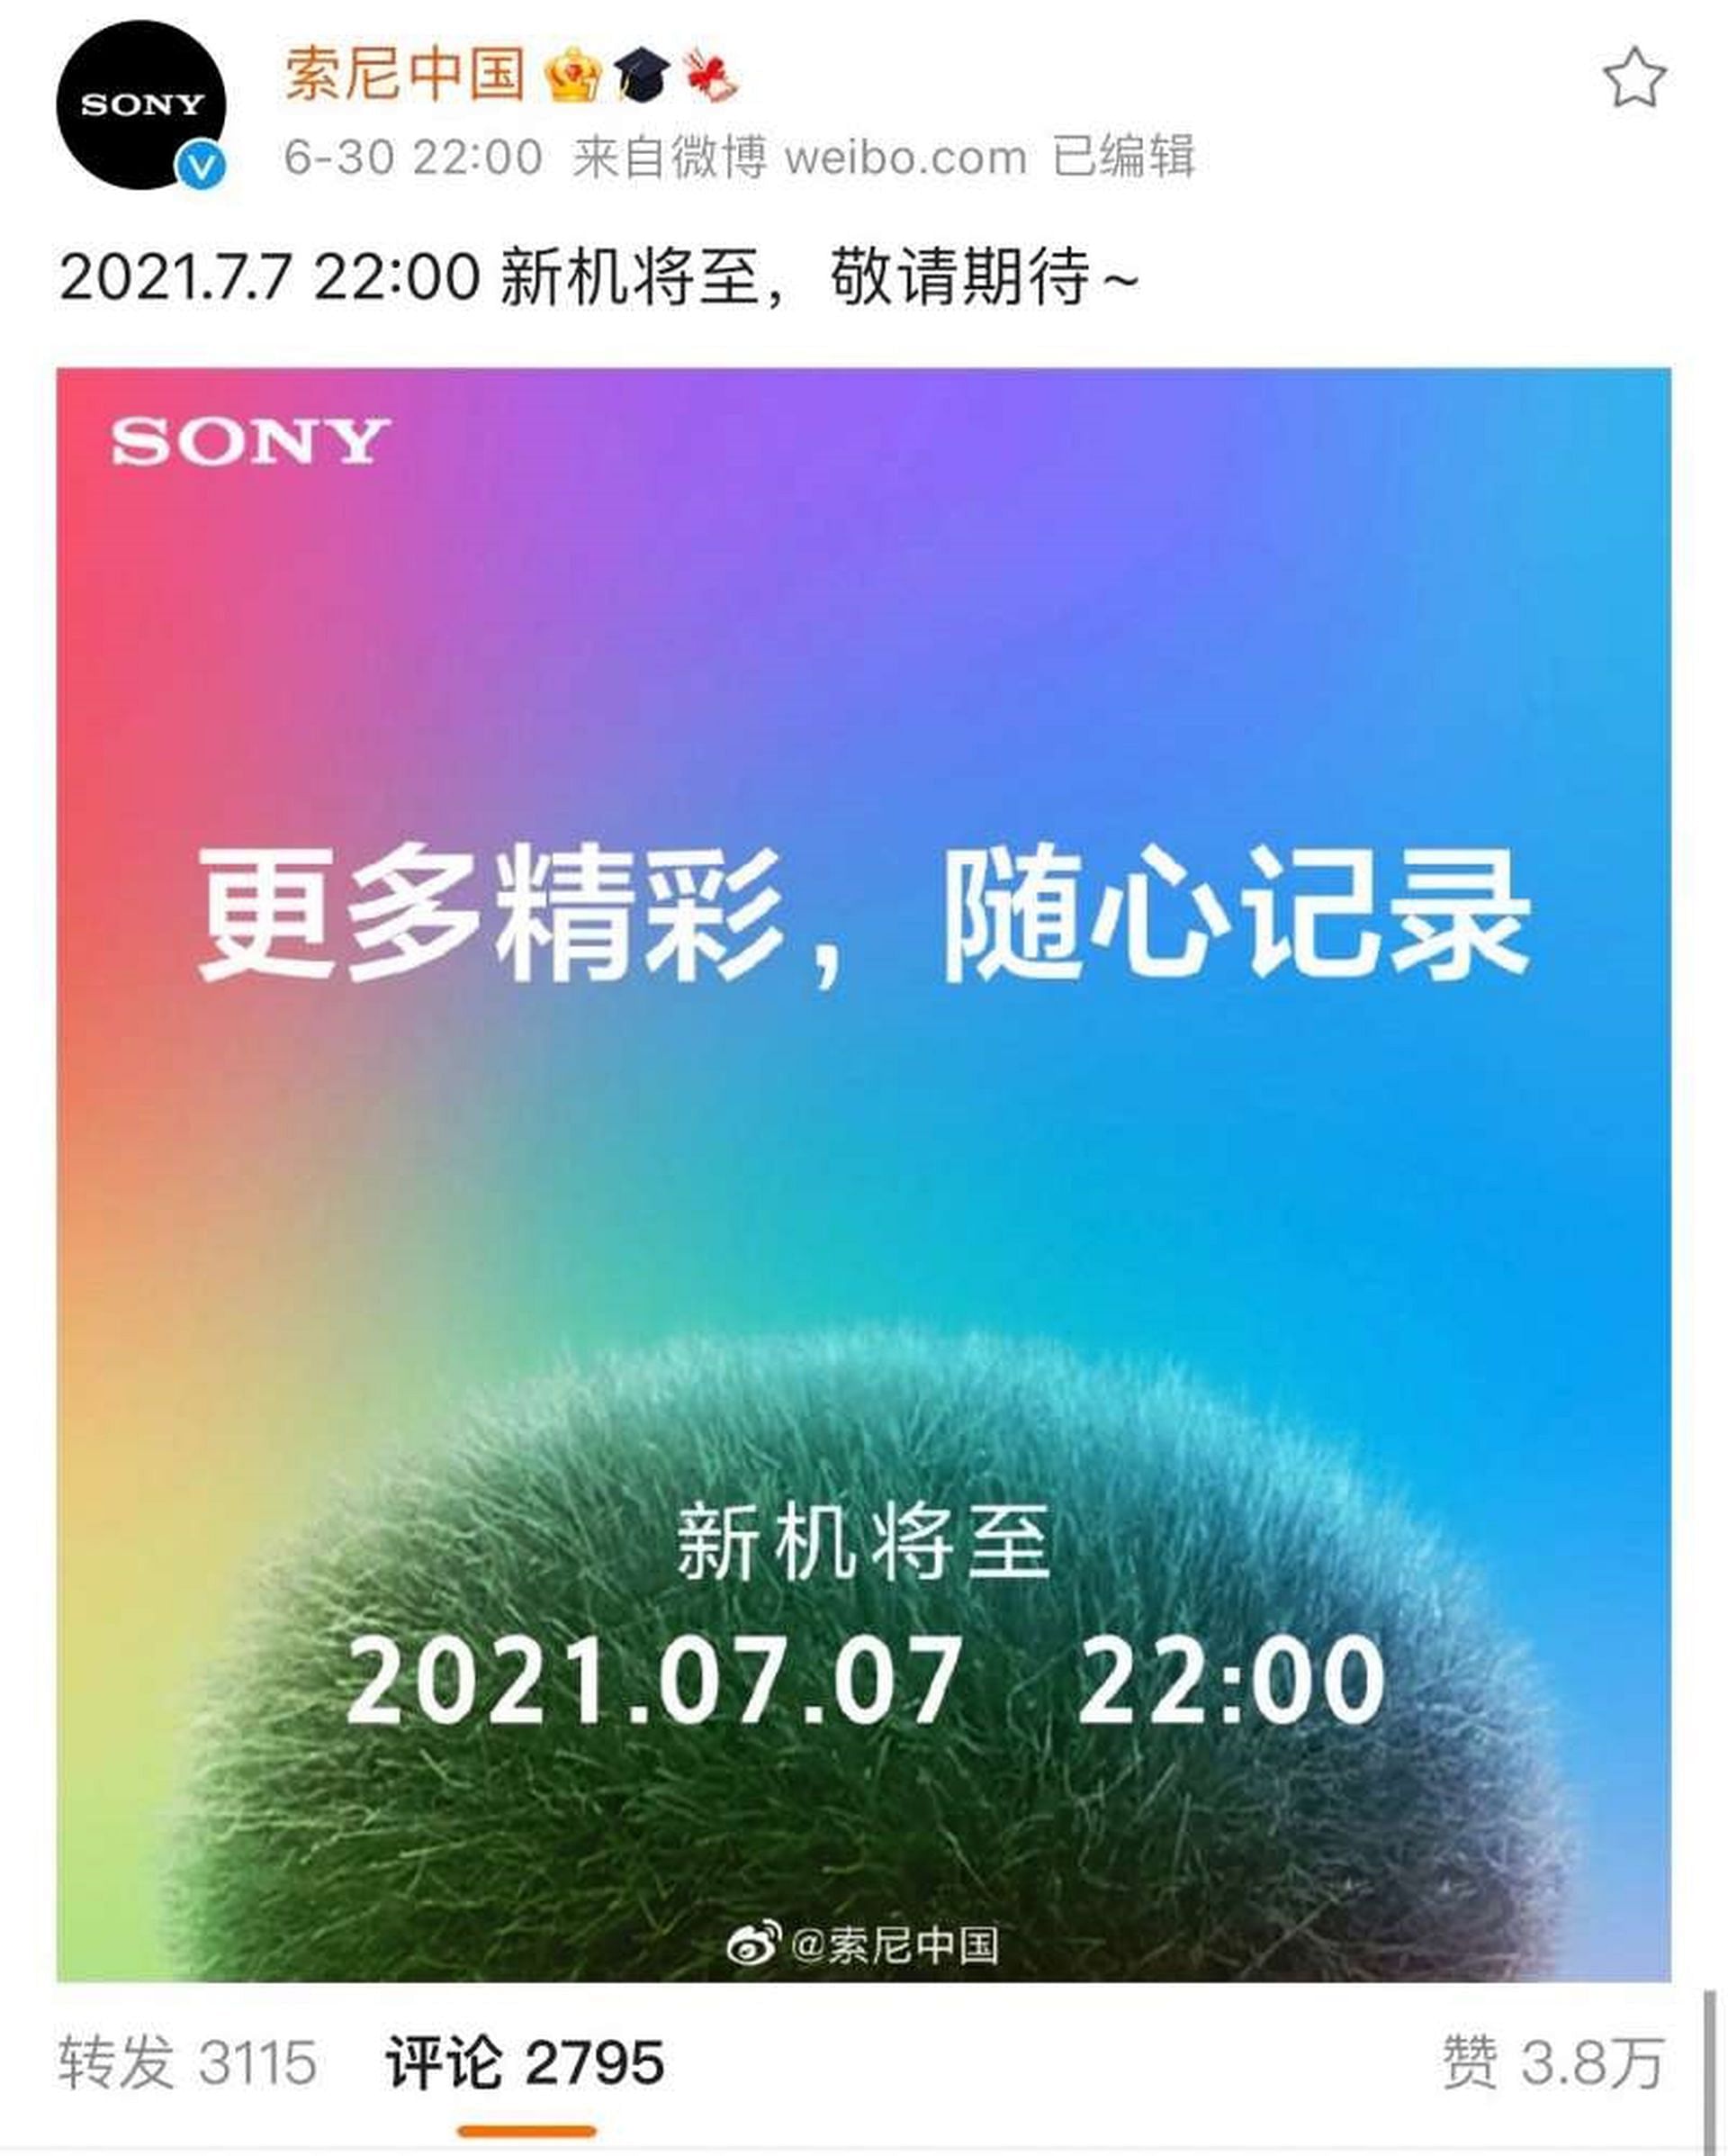 索尼中国就新品发布与“七七事变”时间相同致歉| 早报 image